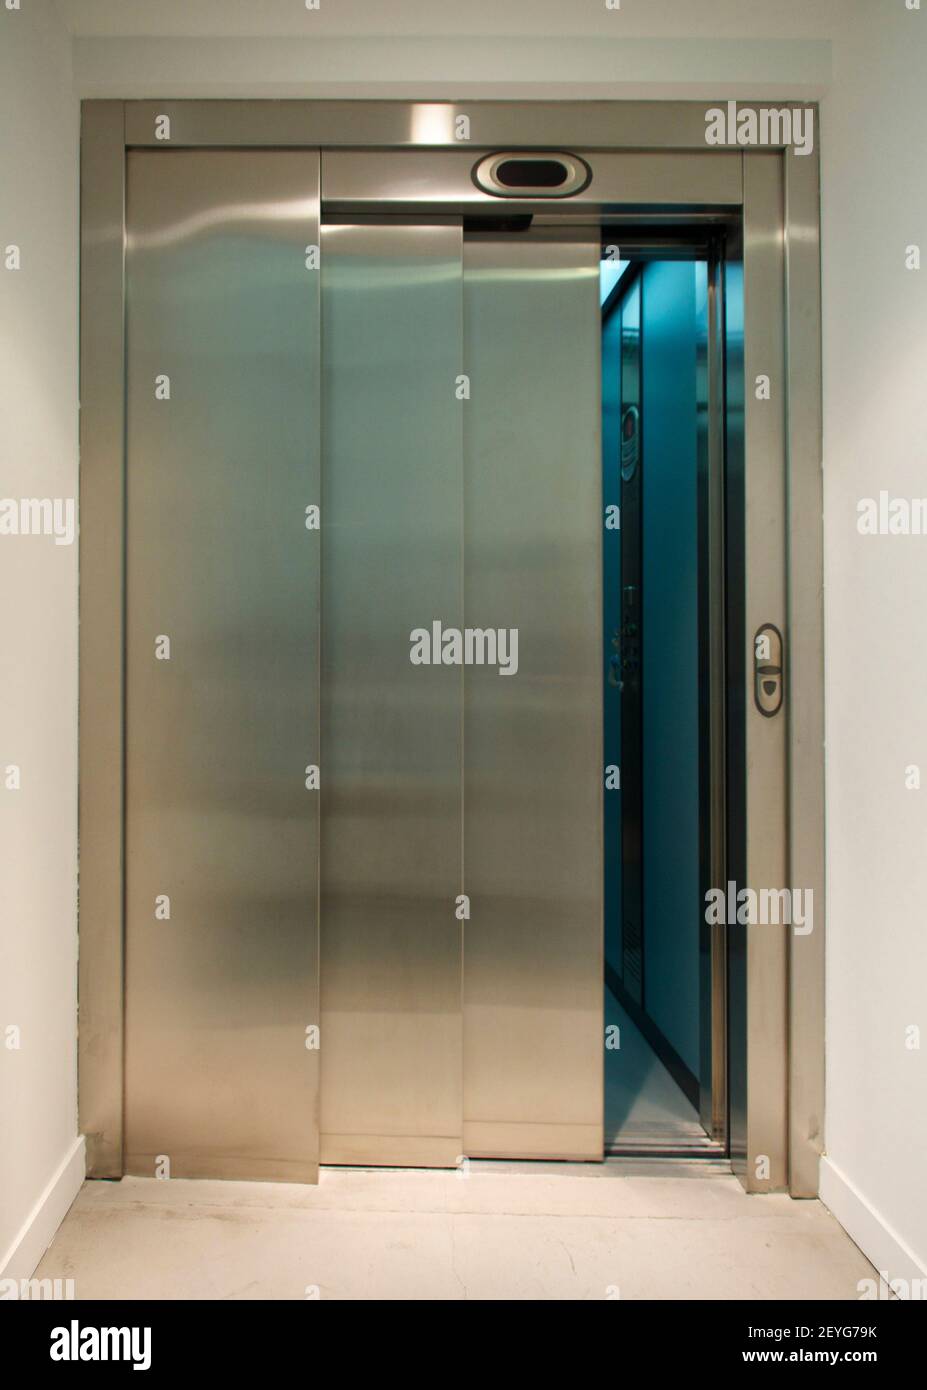 Elevator door opened Stock Photo